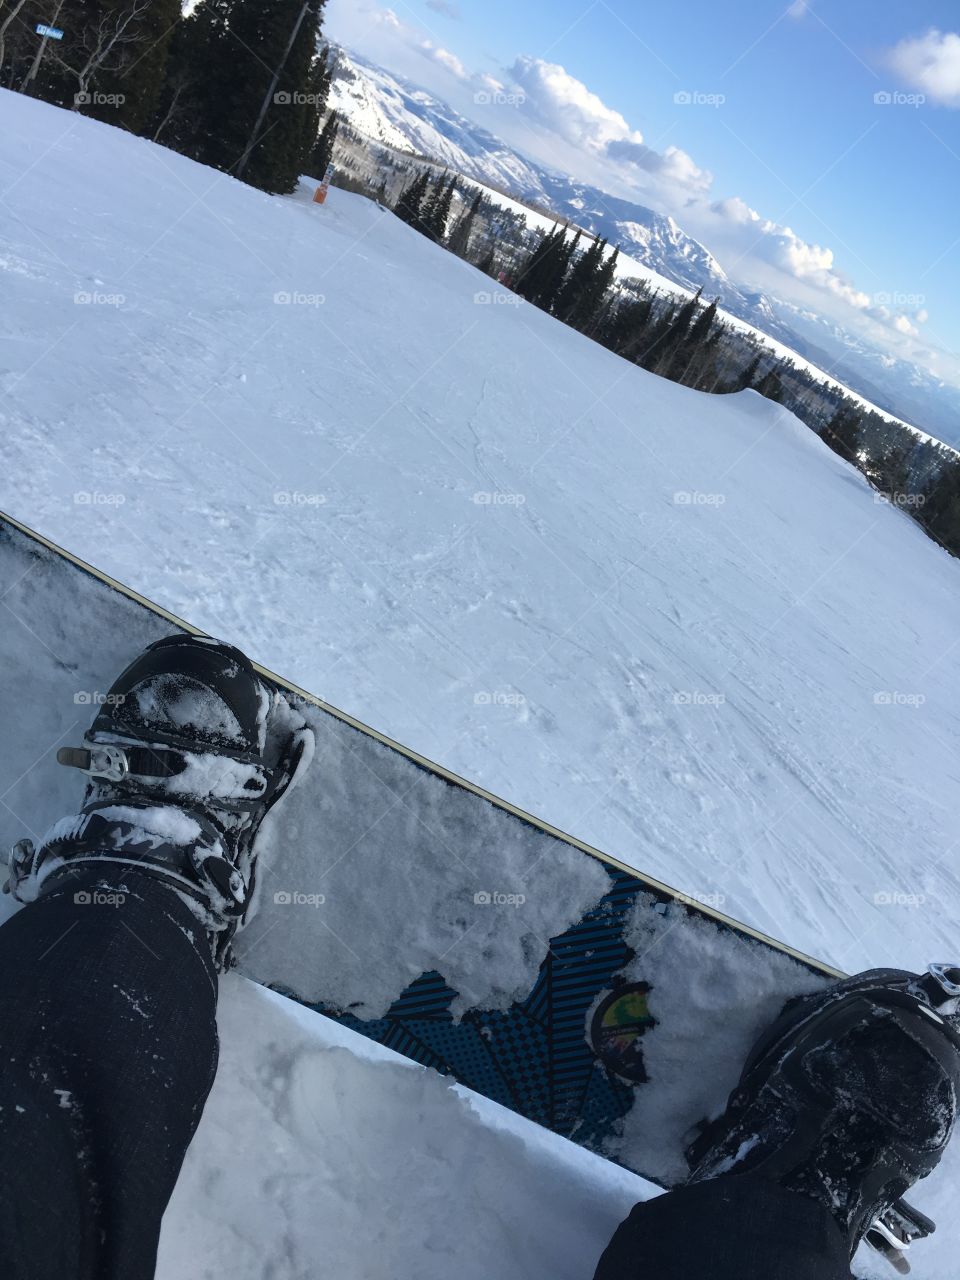 Snowboarding at powder mountain 